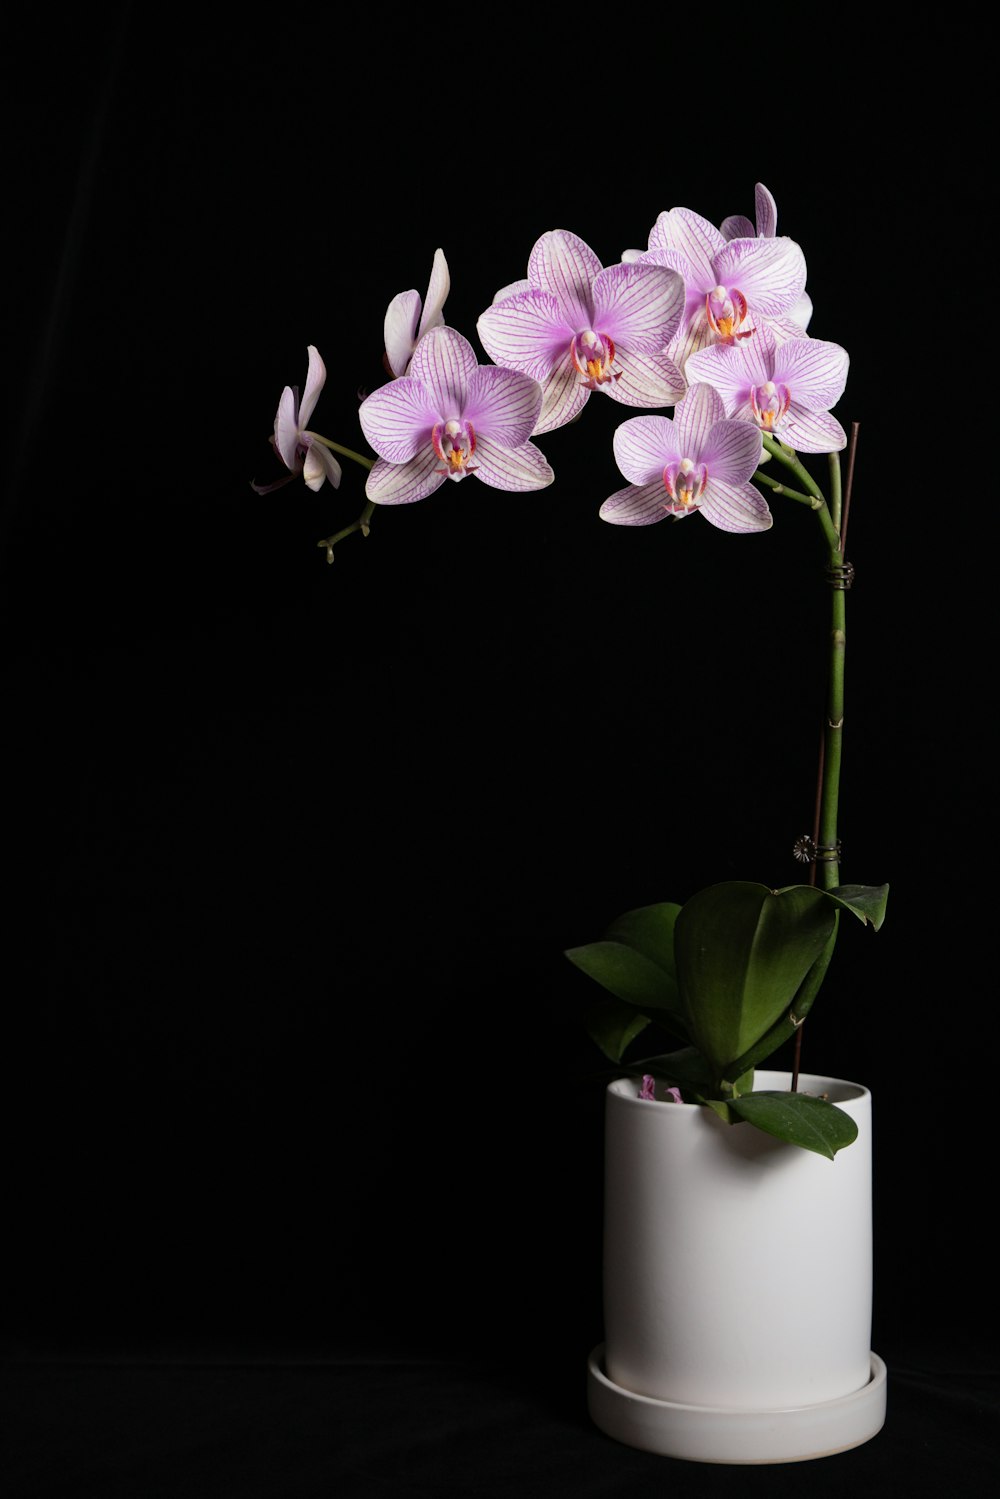 orquídeas roxas e brancas no vaso de cerâmica branco